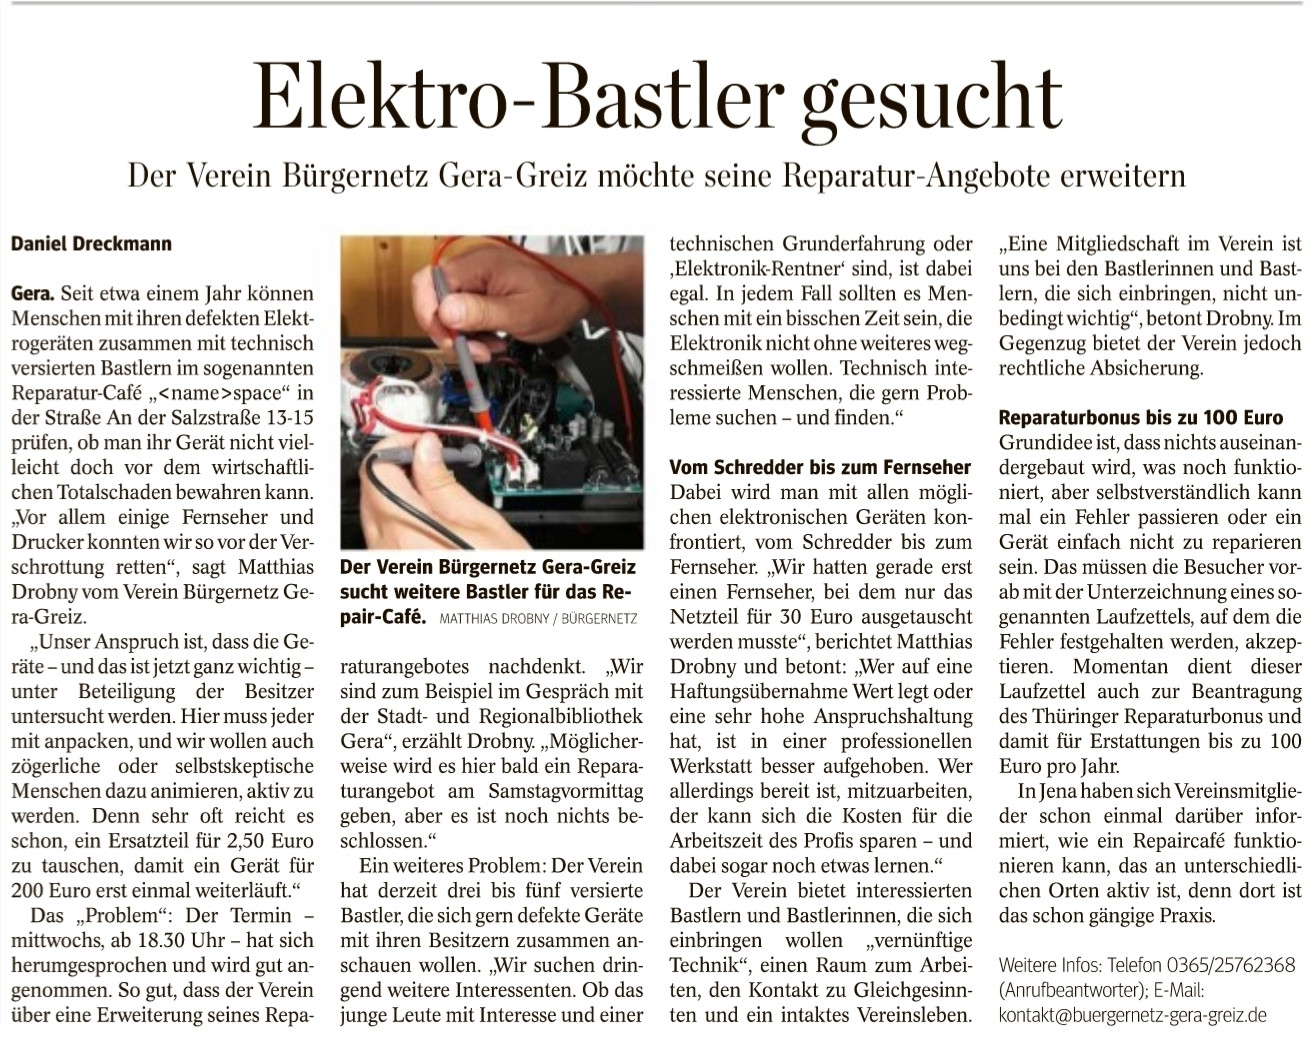 Schon Fernseher und Drucker gerettet: Elektro-Bastler für Geraer Repair-Café gesucht